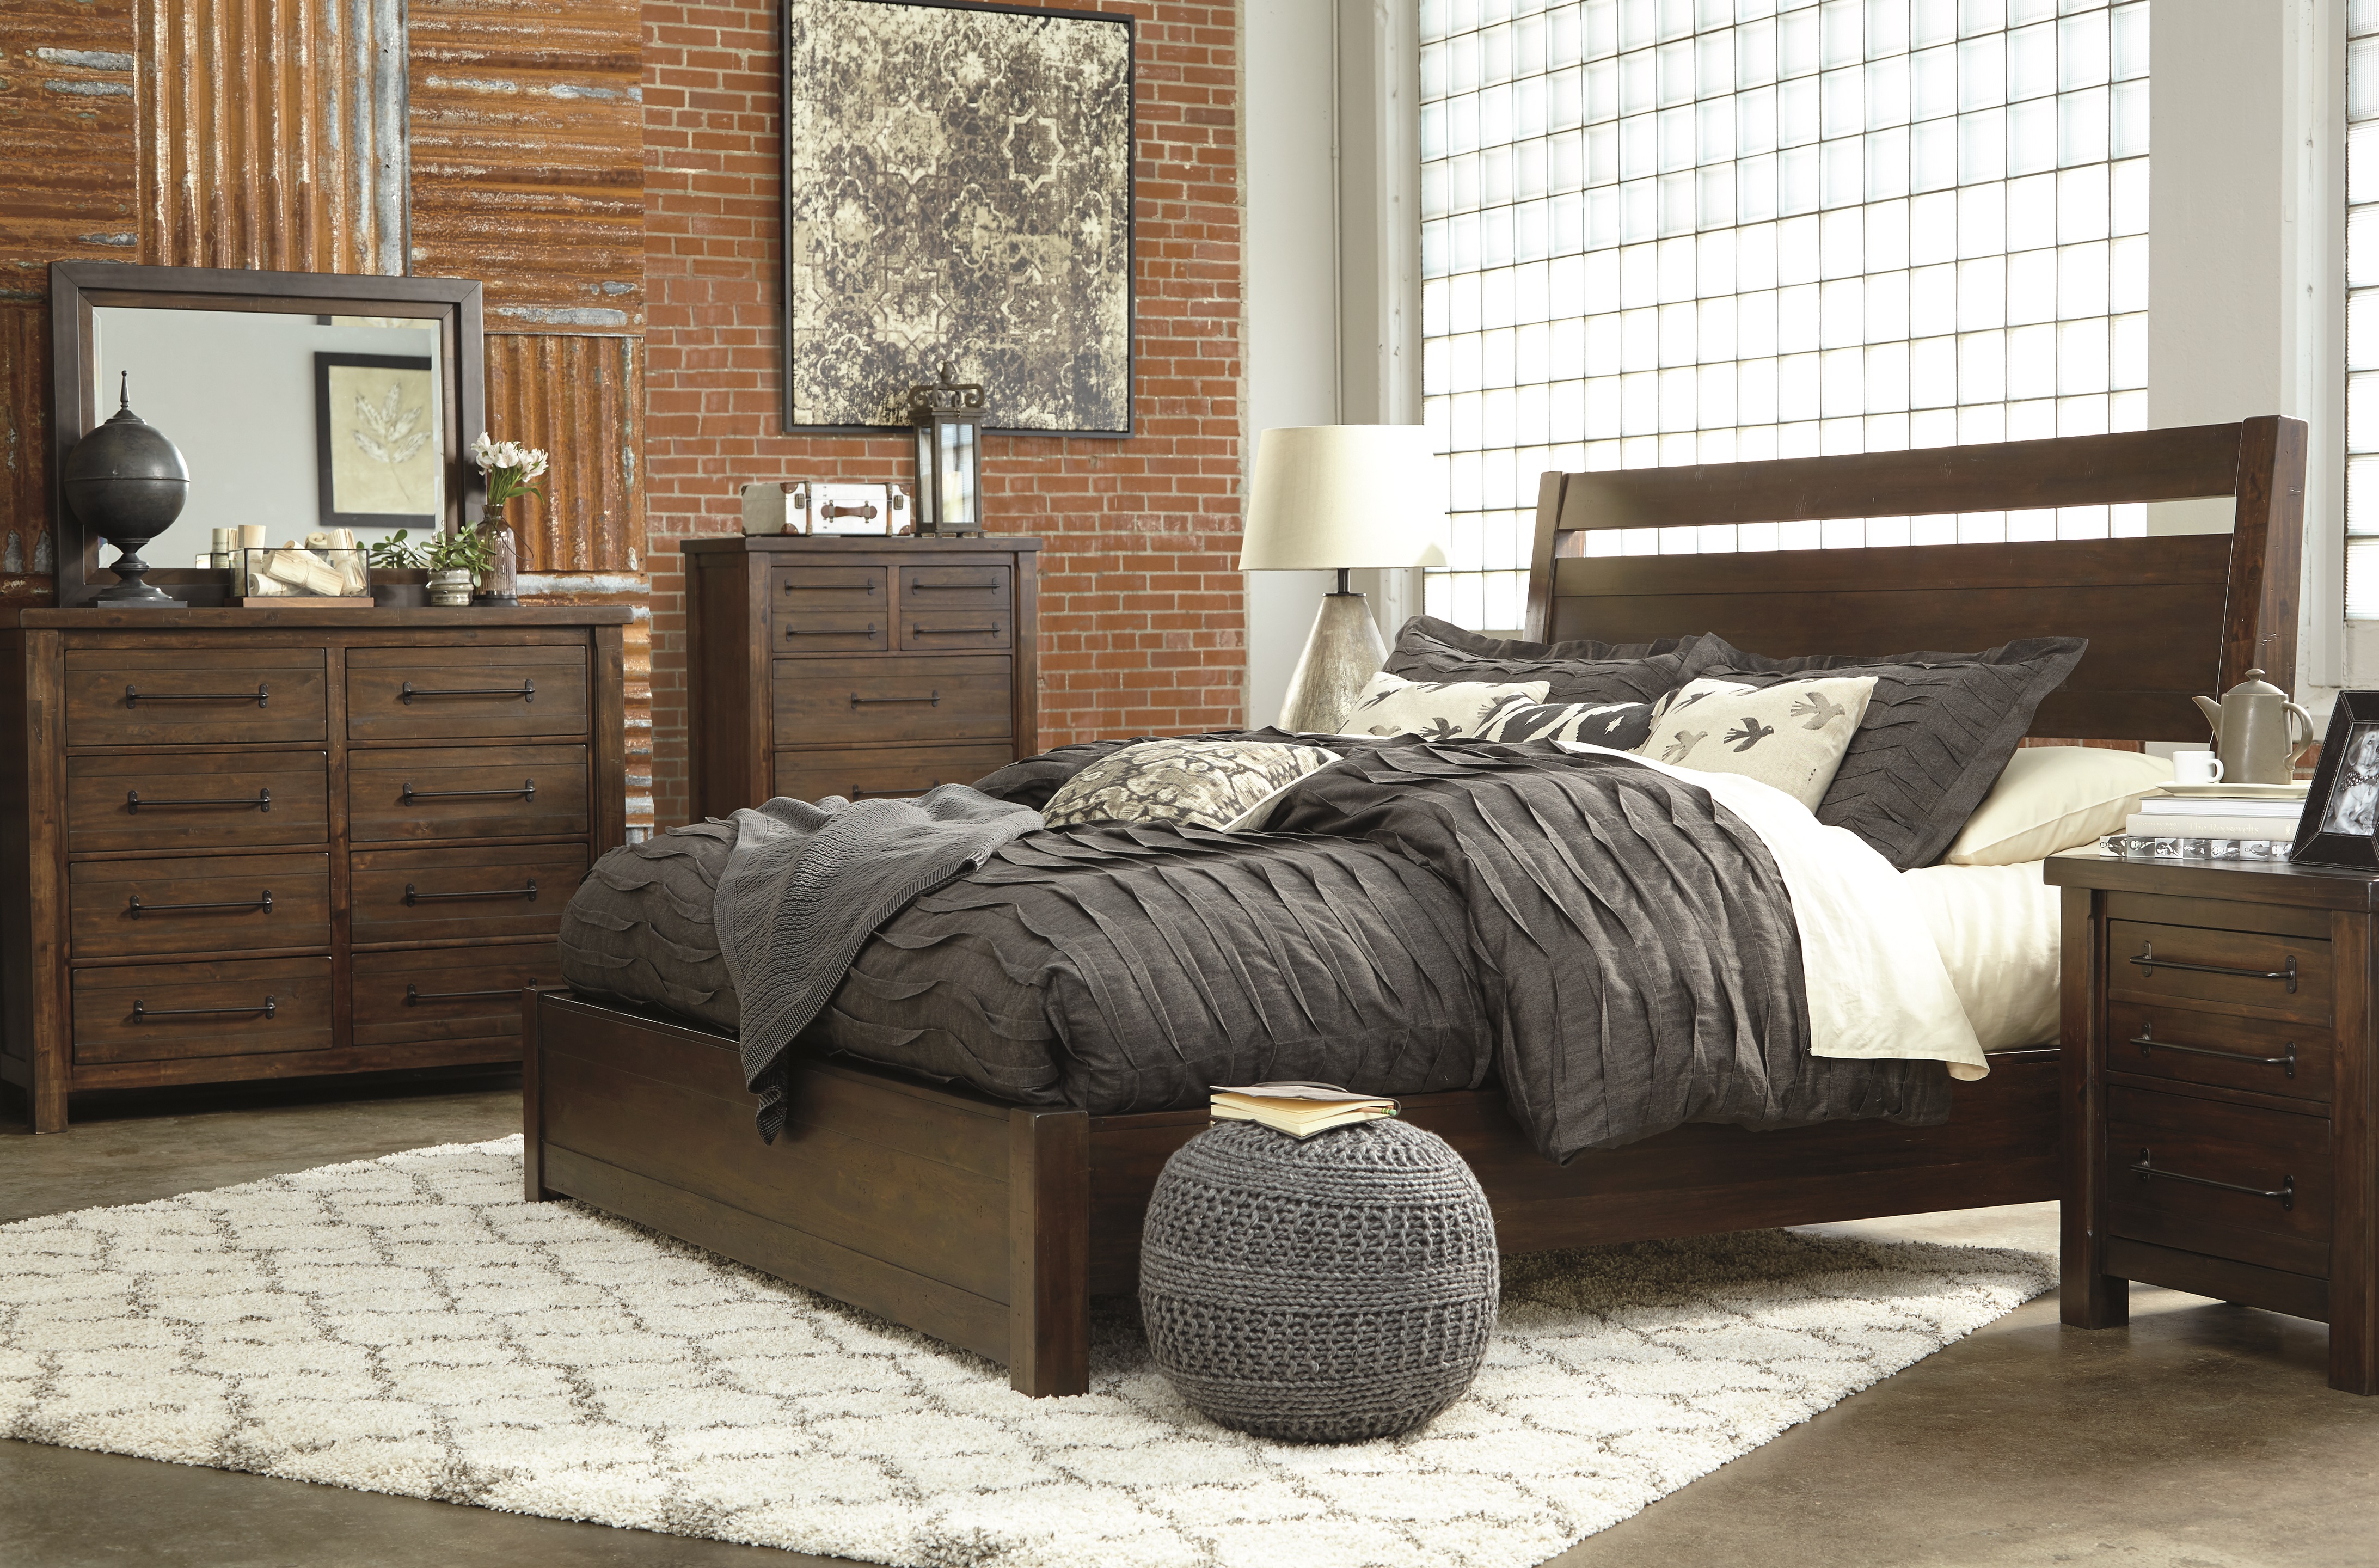 Bedroom Archives - Ashley Furniture HomeStore Blog